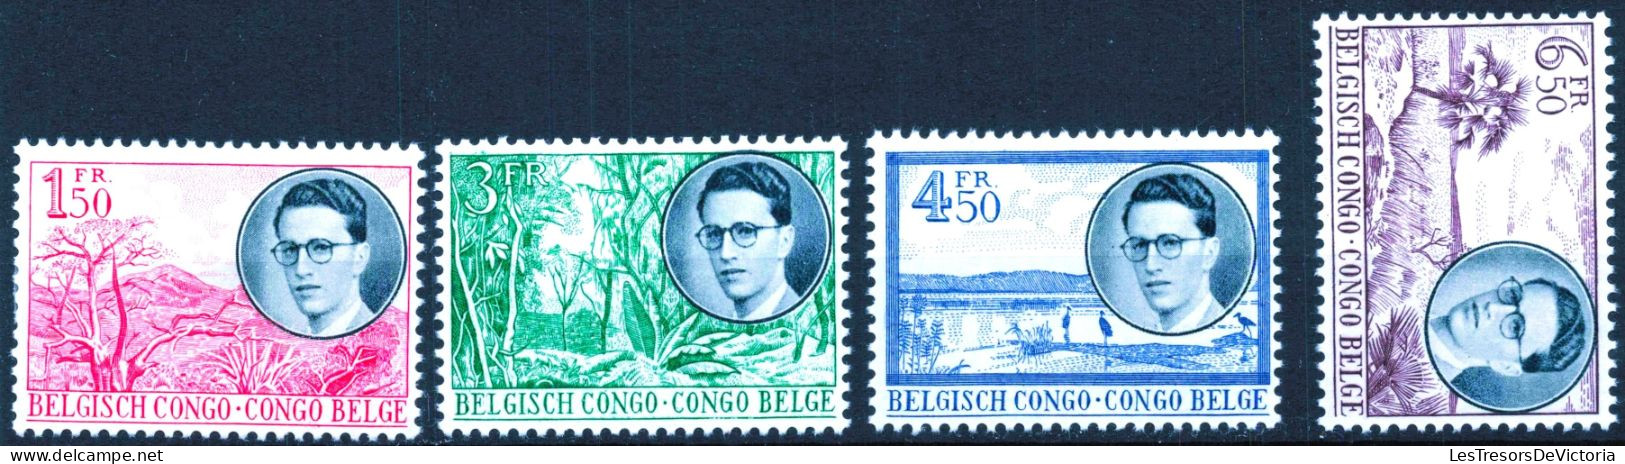 Timbre - Belgique - COB 329/36* -1955 - Voyage Royal Au Congo Predominance Néerlandaise Et Française - Cote 32 - Ongebruikt